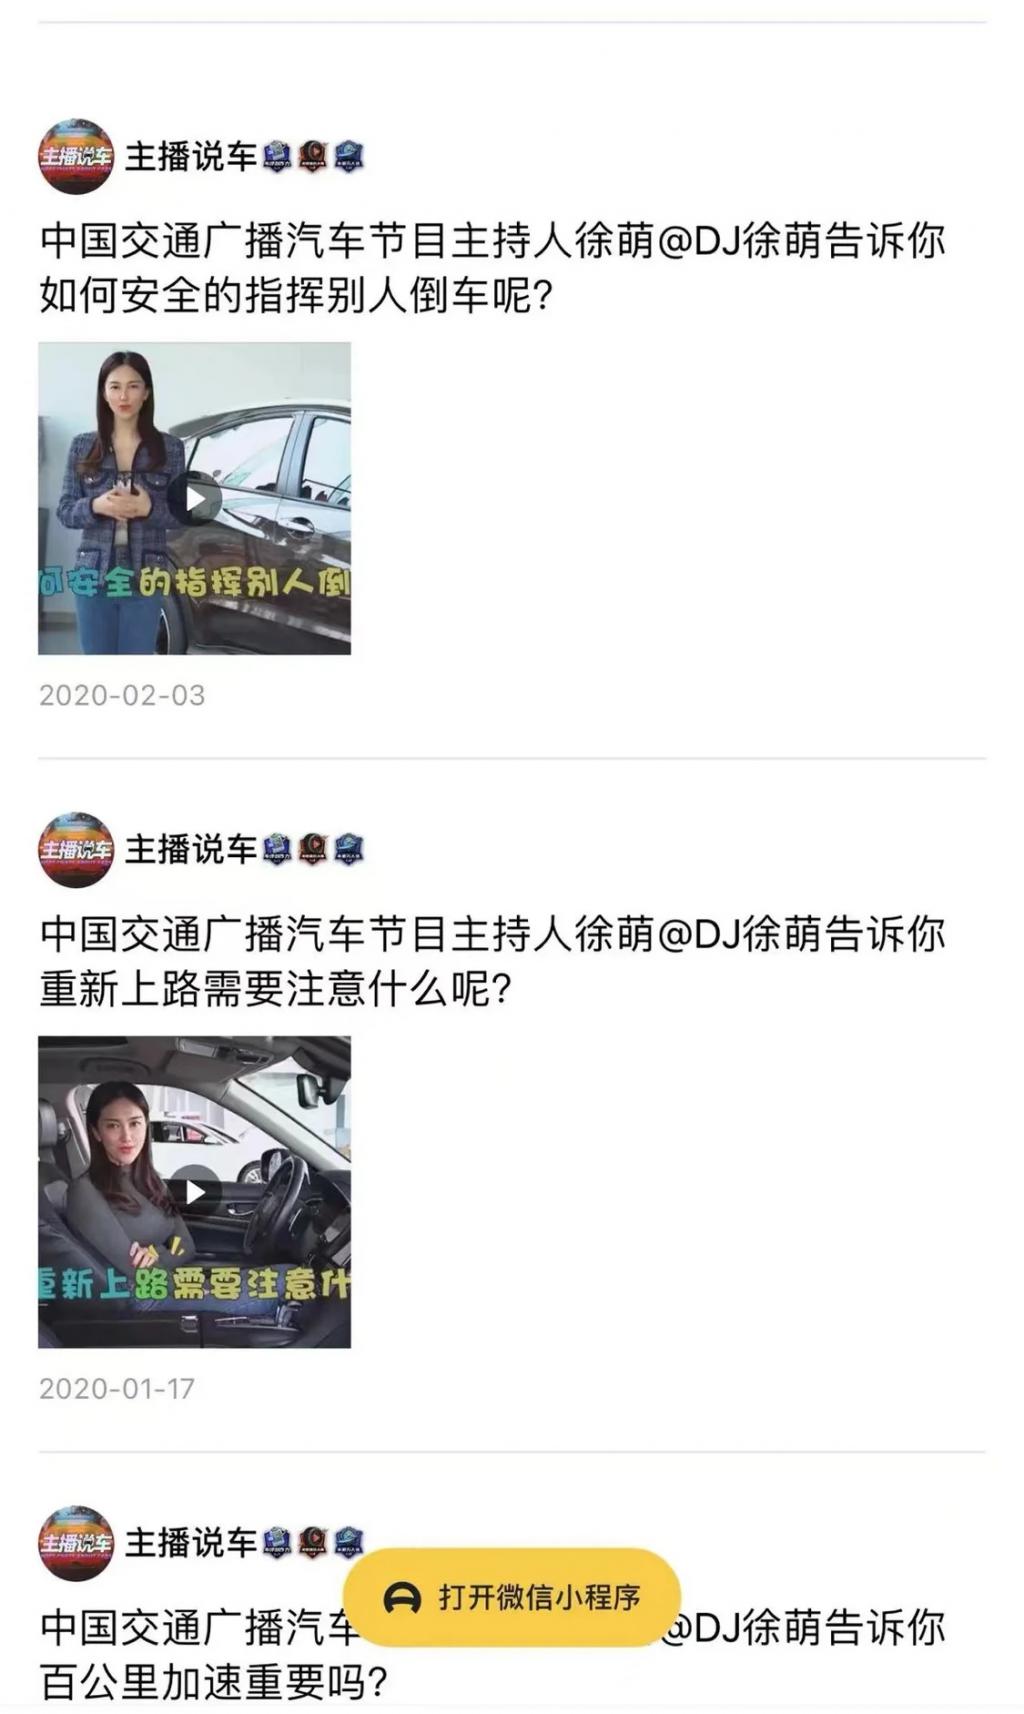 有網民挖出為中國交通廣播節目《汽車風雲》主持人徐萌。